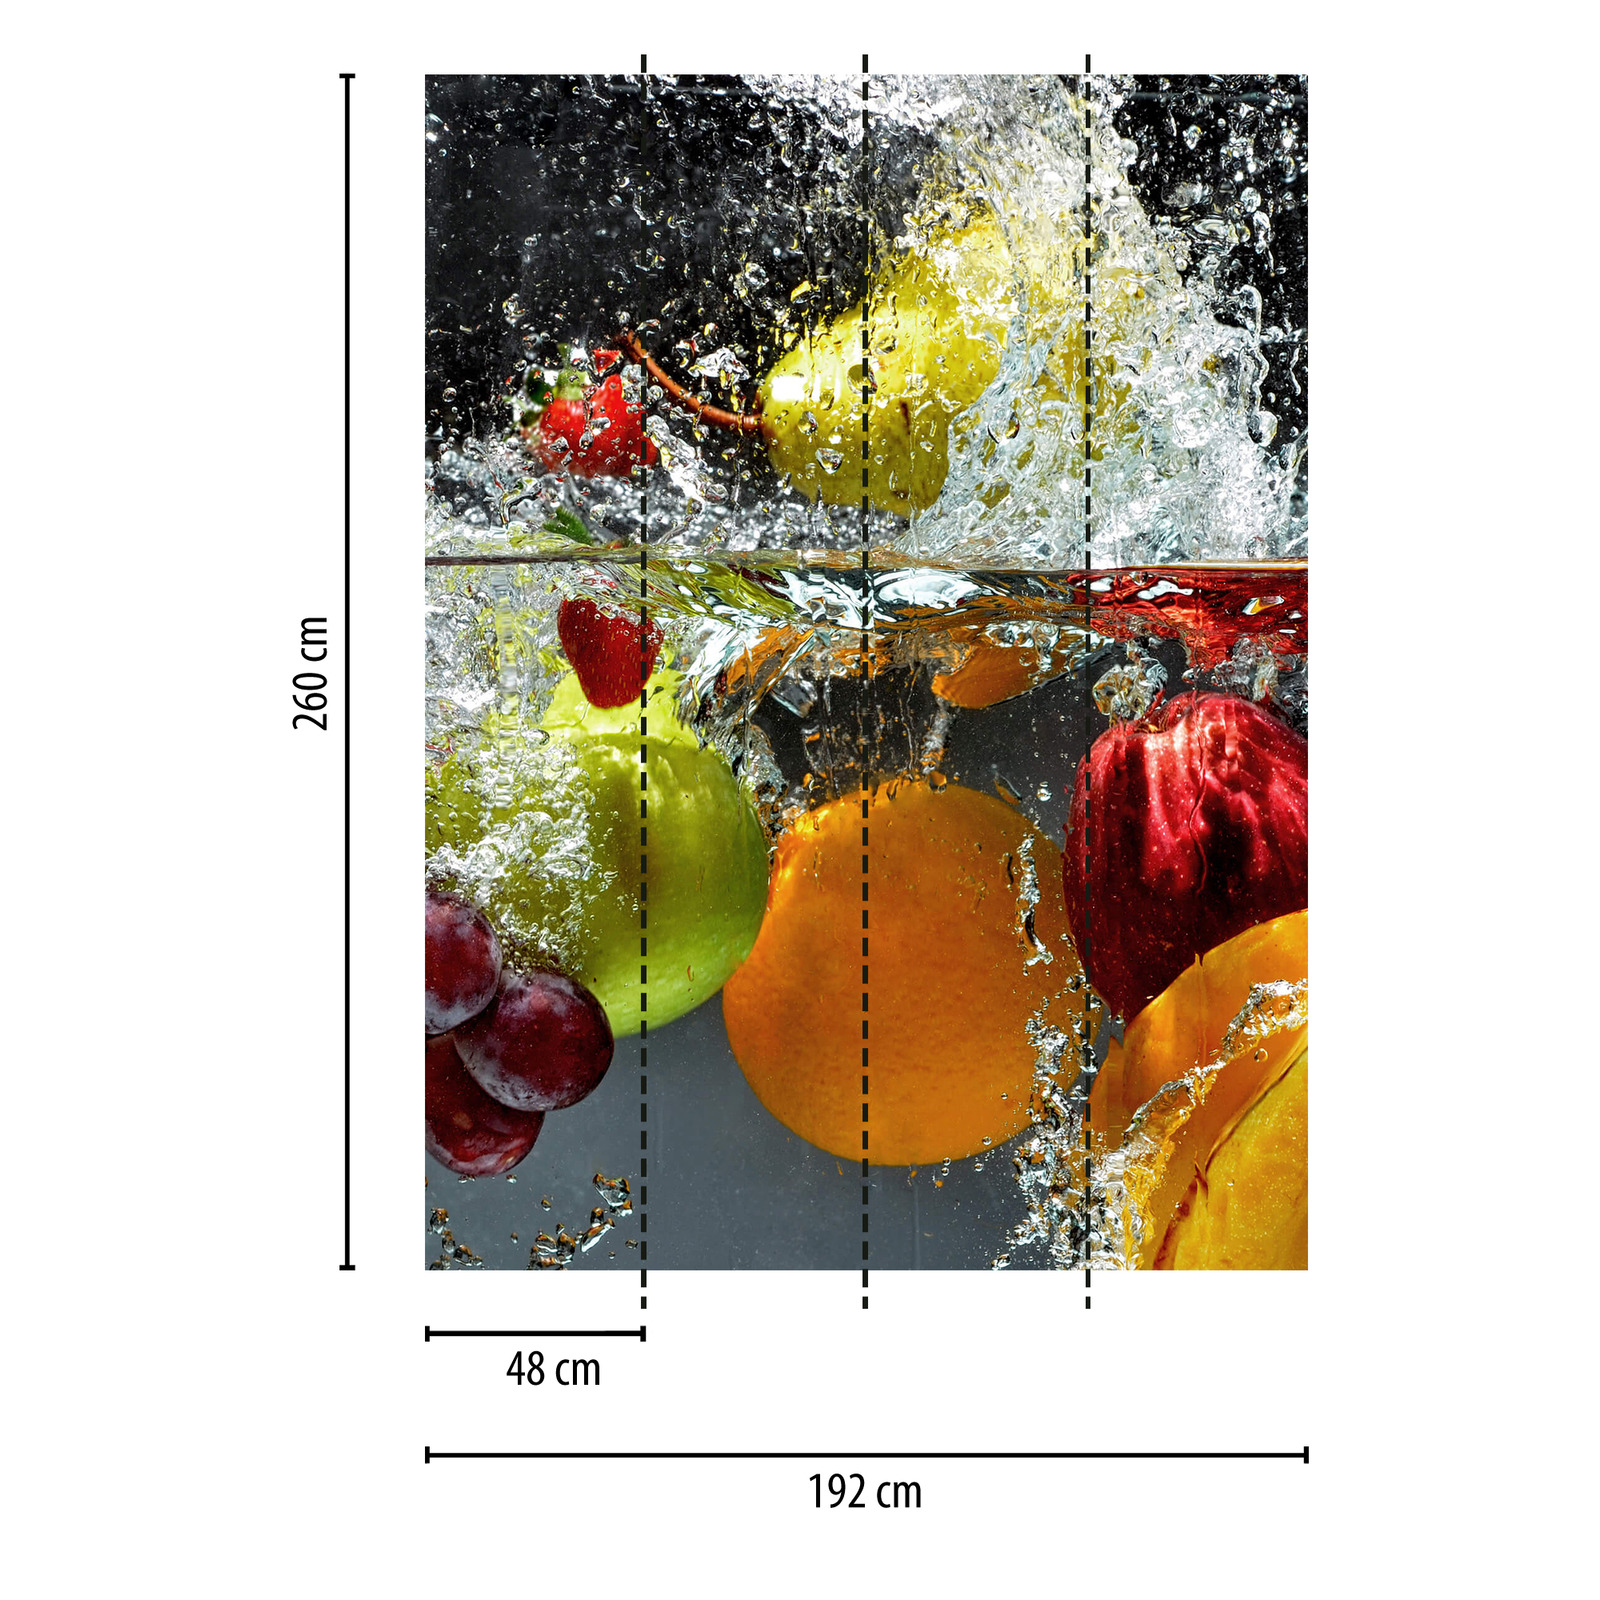             Frutta in acqua - Carta da parati, formato verticale - Colorata, gialla, rossa
        